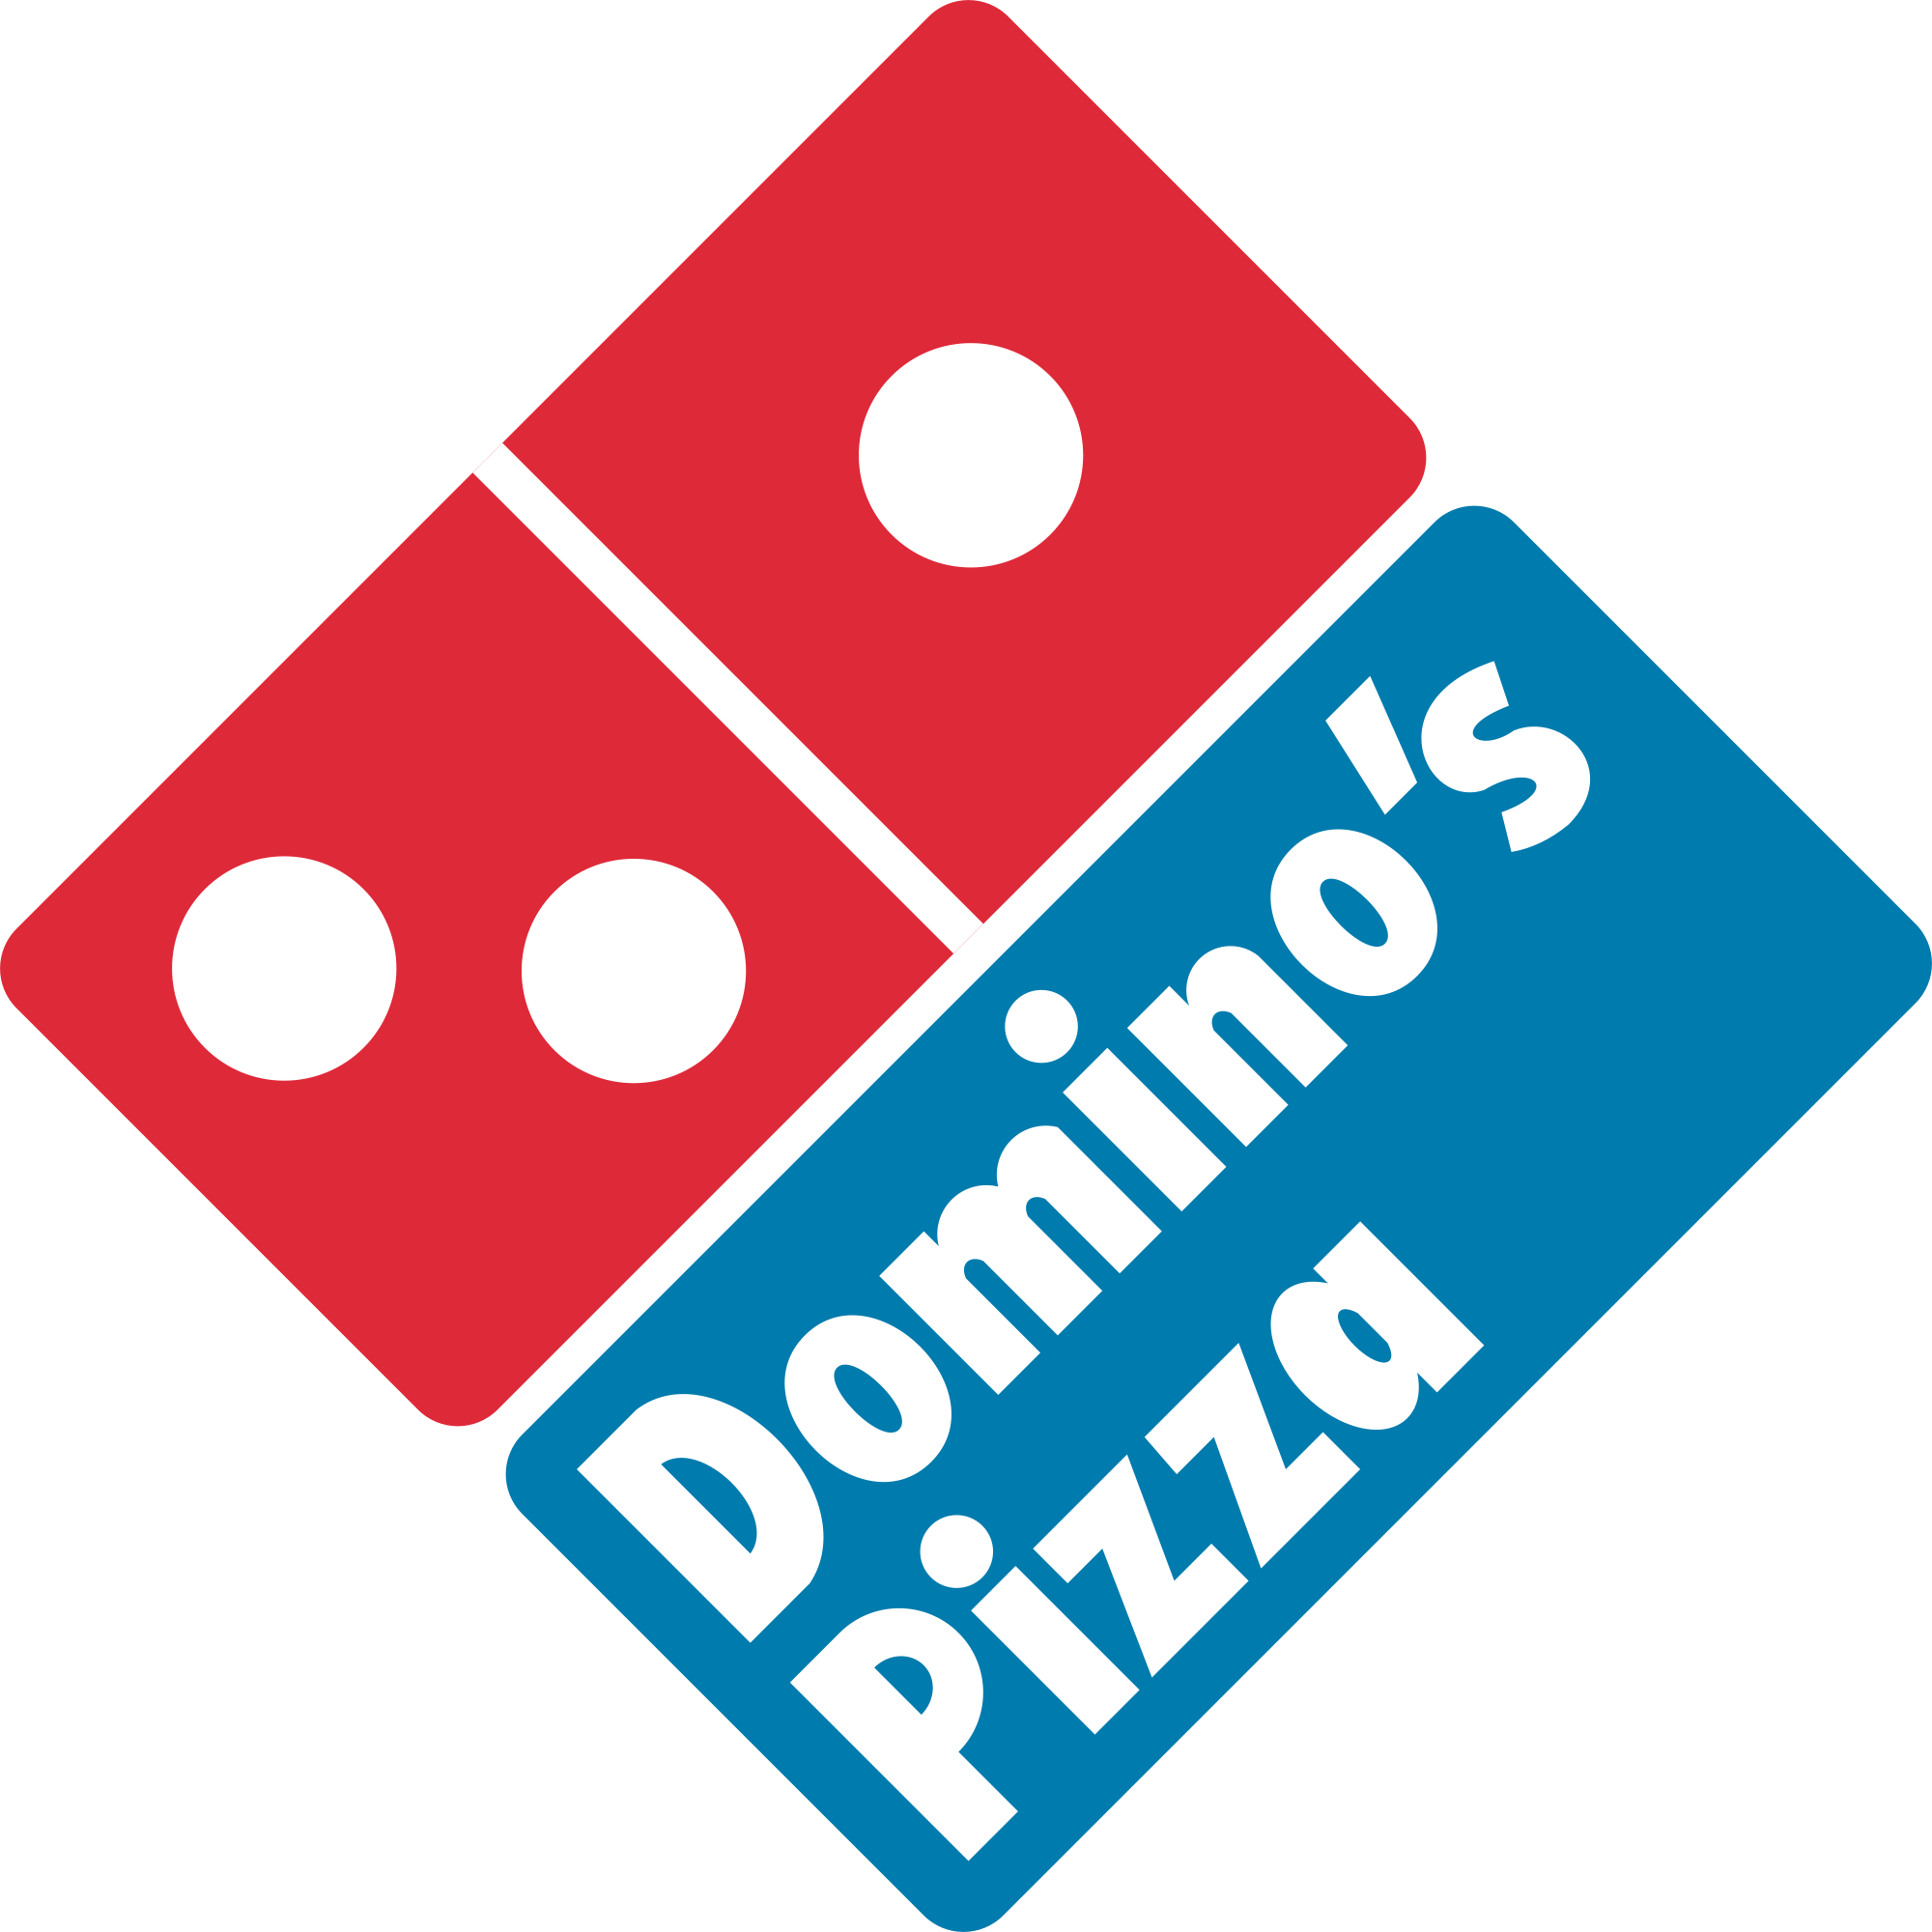 Domino's Pizza (DPZ)